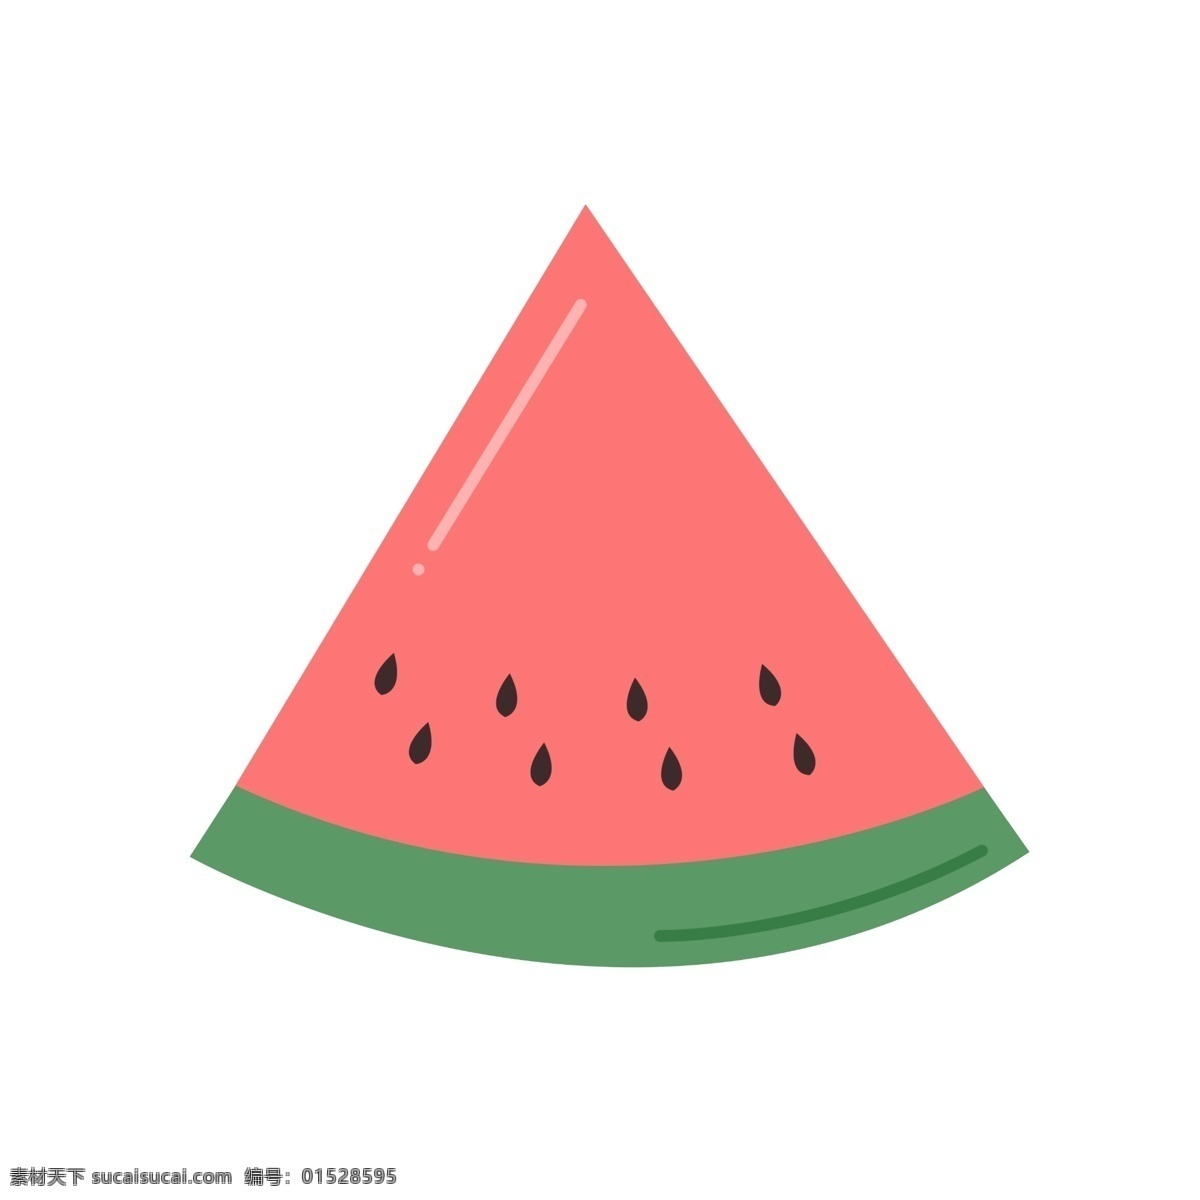 水果 图标 元素 西瓜 ppt图标 简约风格 水果图标 海报图标 西瓜水果 免 扣 图案